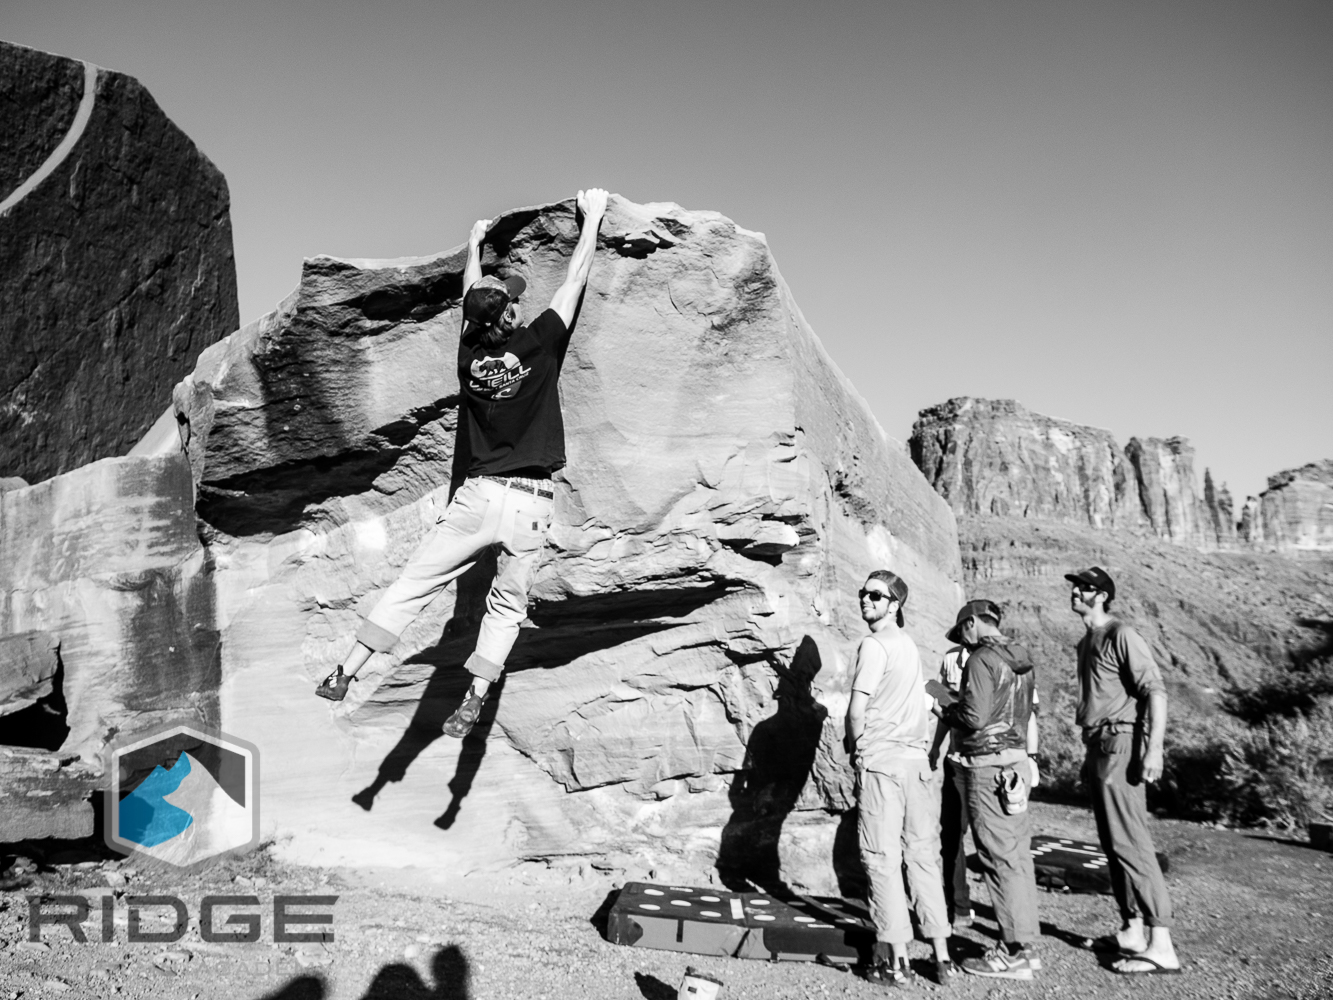 RIDGE in Moab, fall 2015-33.JPG